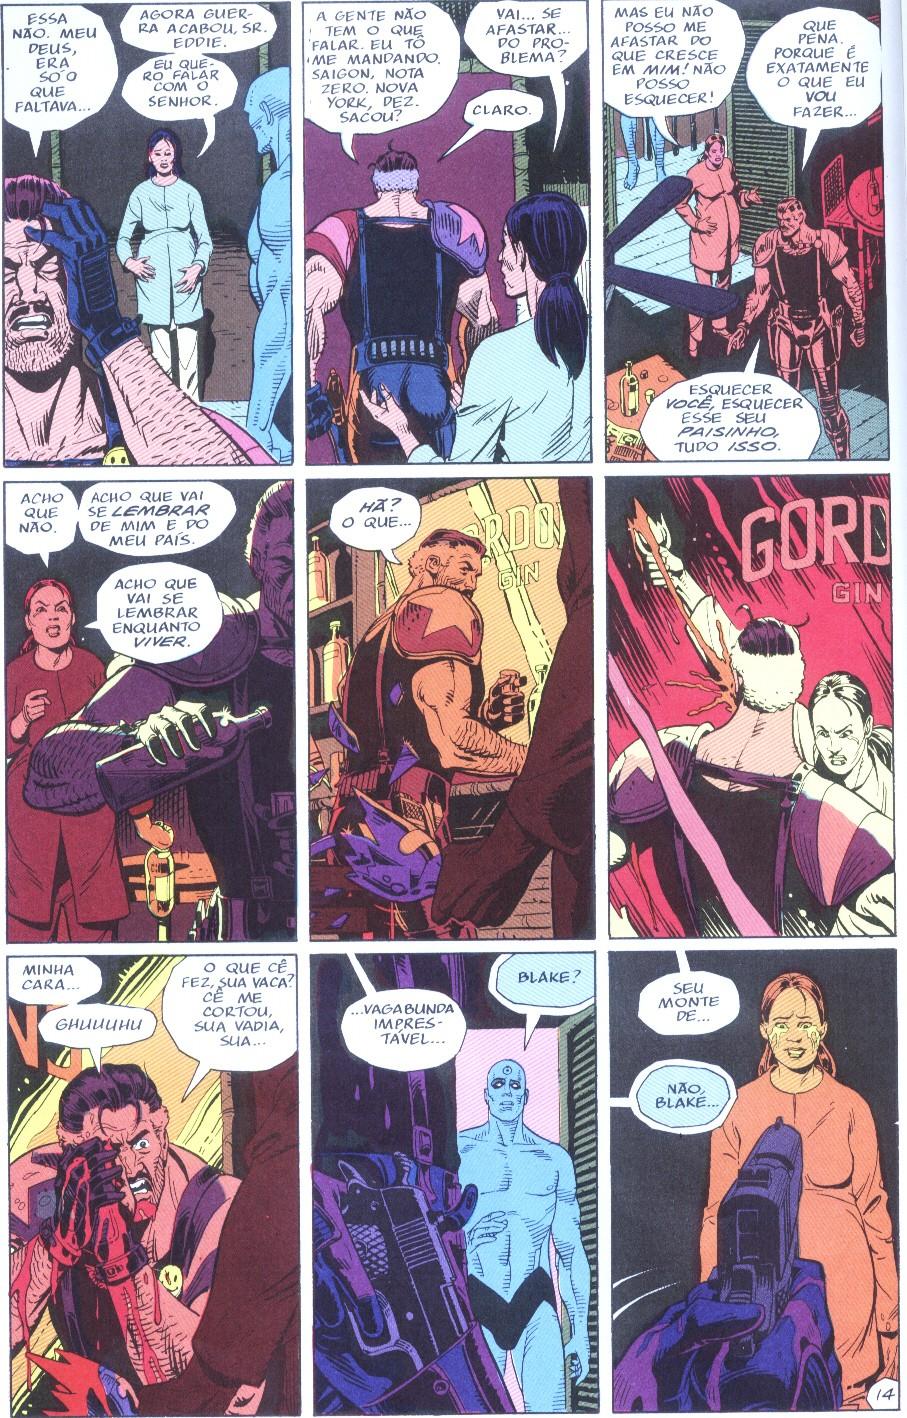 Em relação aos super-heróis, Watchmen retoma e toma como base a tradição das narrativas desses personagens.